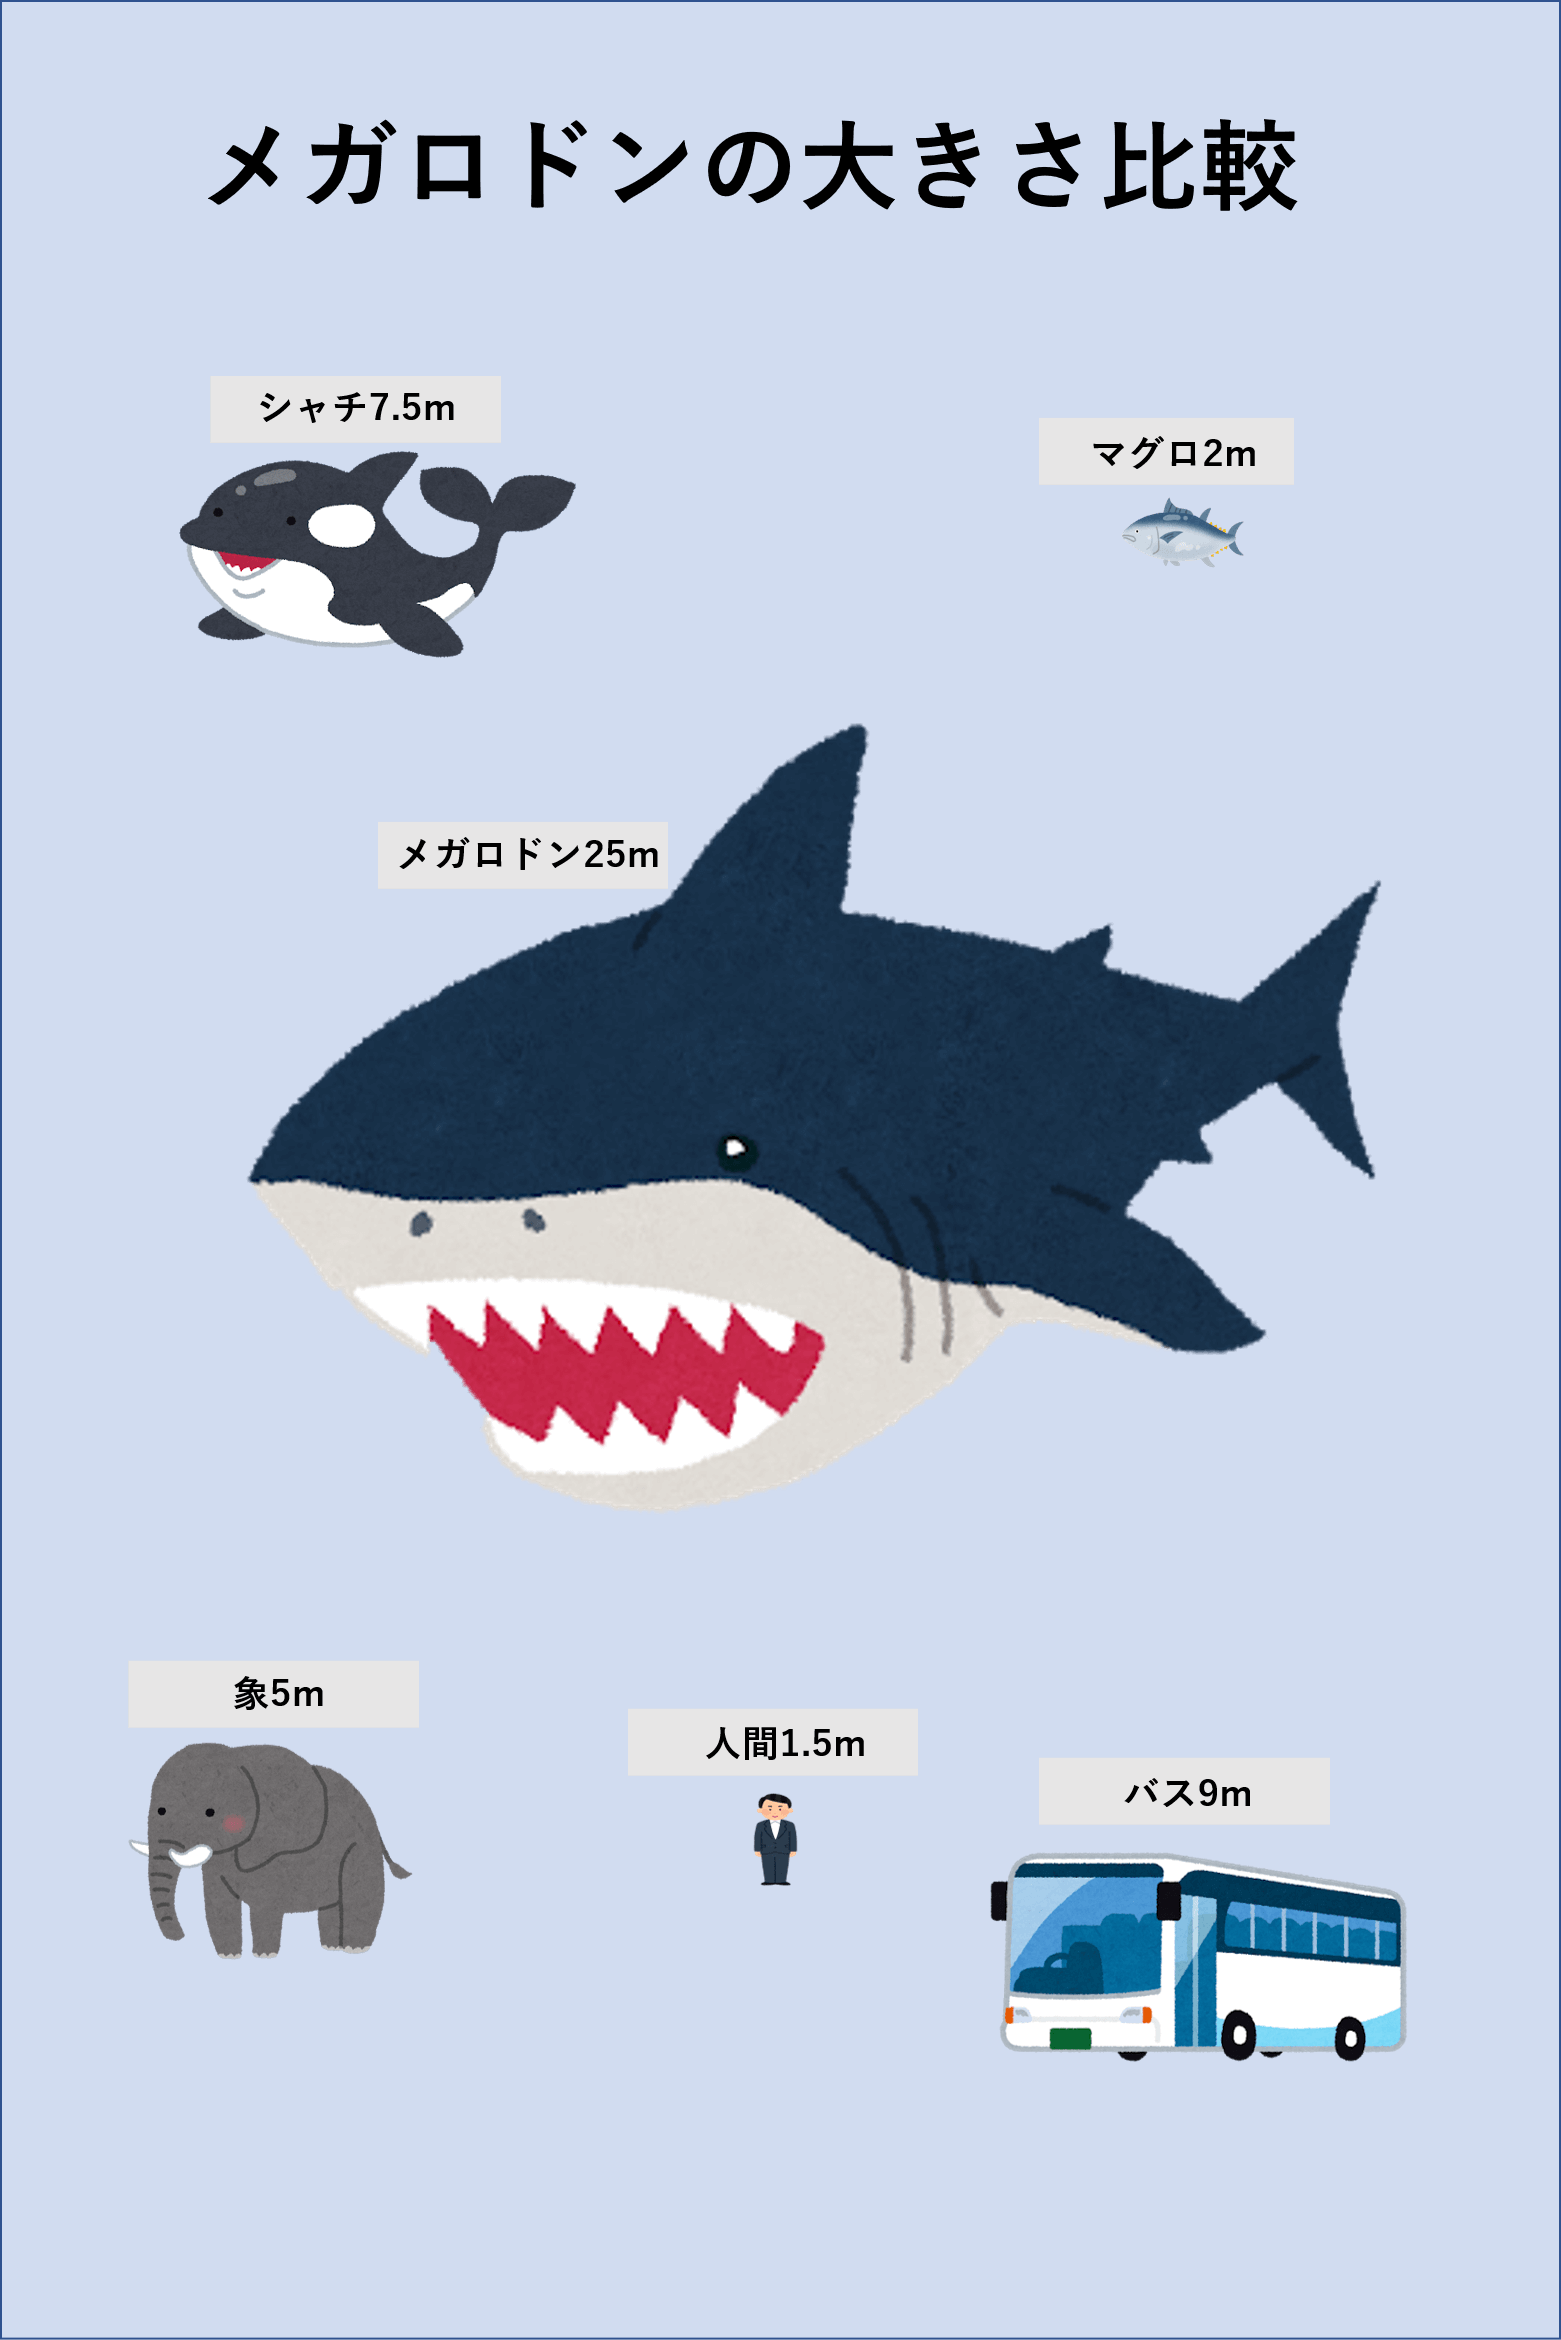 巨大サメのメガロドンは実在する 大きさ 特徴 目撃情報を紹介